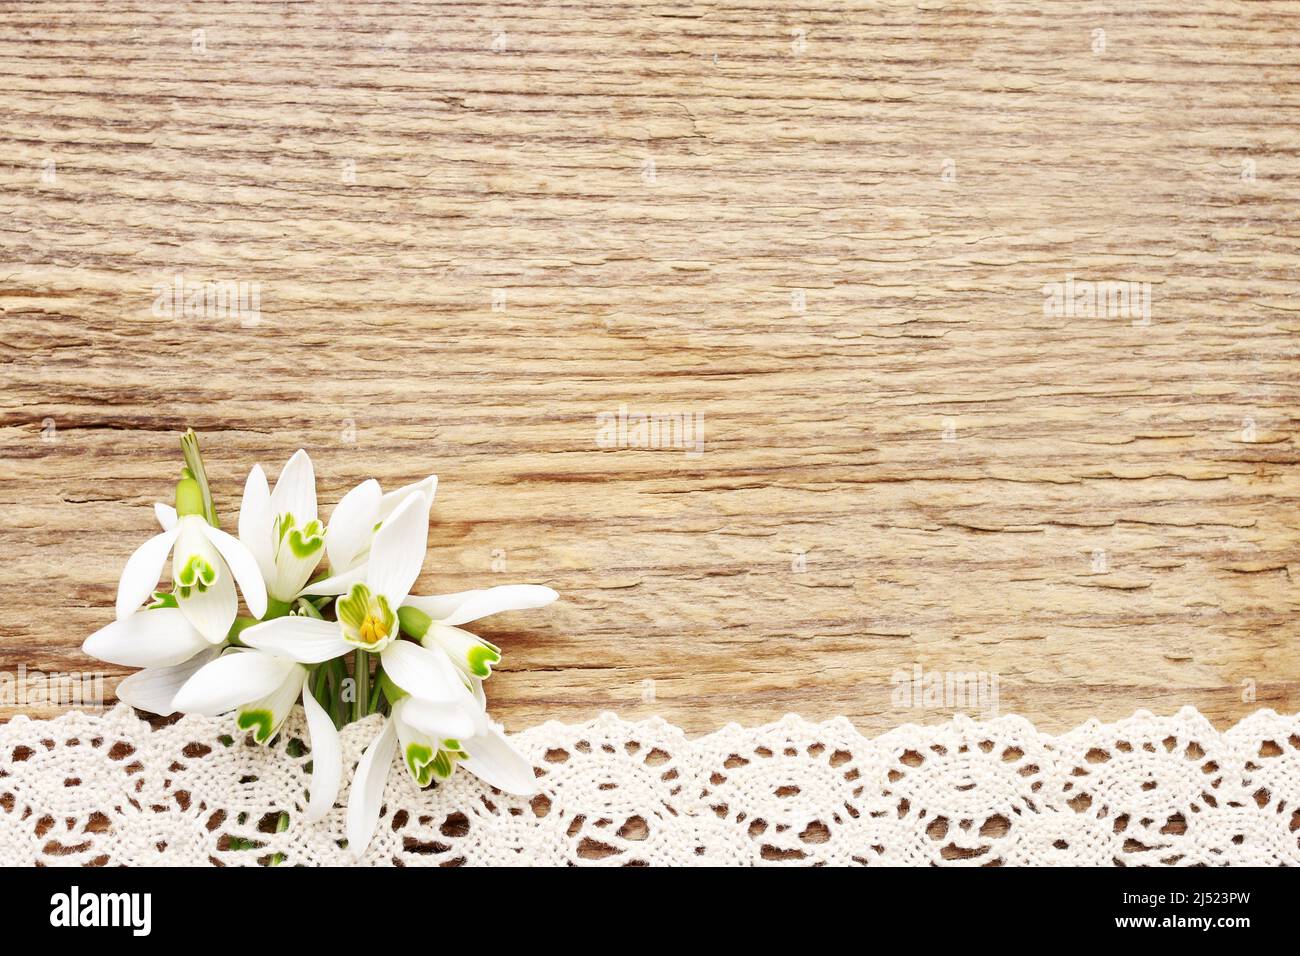 Ramo de flores de nieve (Galanthus nivalis) sobre fondo de madera, espacio para copias. Foto de stock